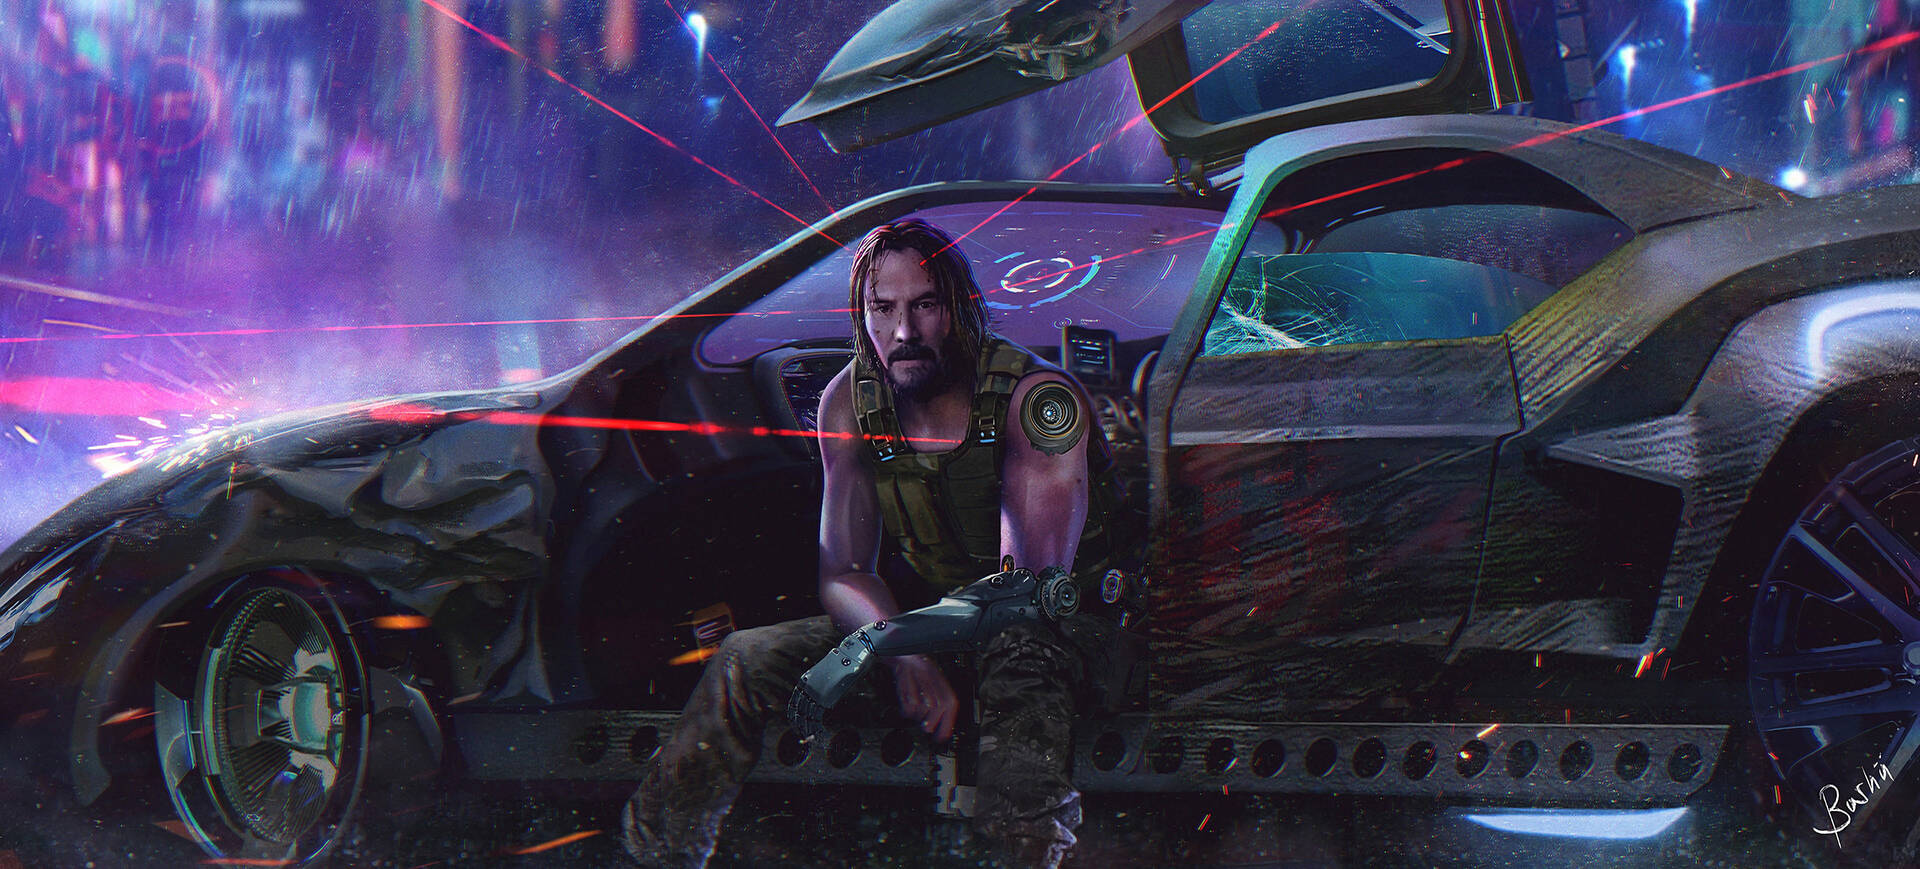 Ultrawide Cyberpunk Keanu Reeves Wallpaper